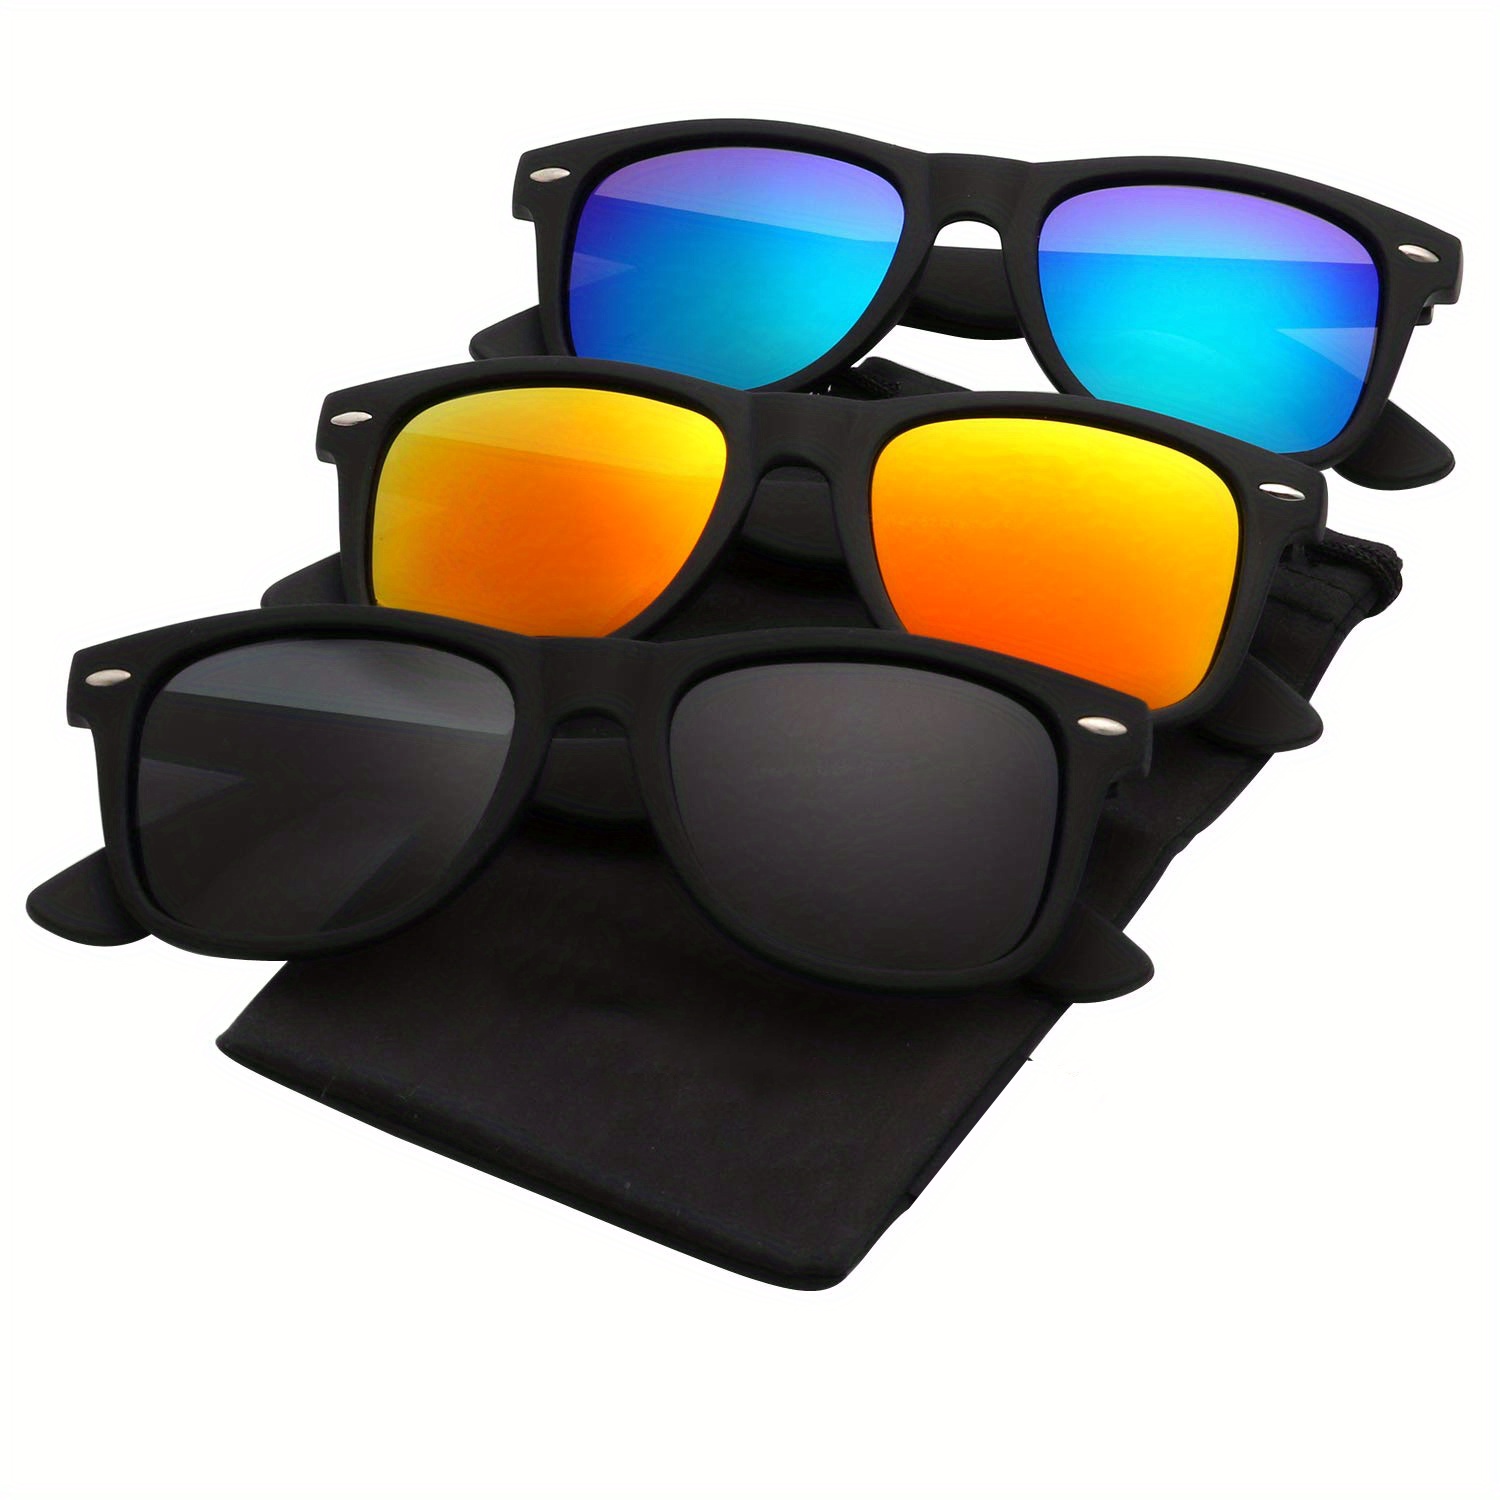 3pcs unisex Polarized Sunglasses for Men Women Driving Fishing UV400 Protection Sunglasses Sun Glasses,Goggles Sunglasses,Y2k,Eyeglasses Sunglasses